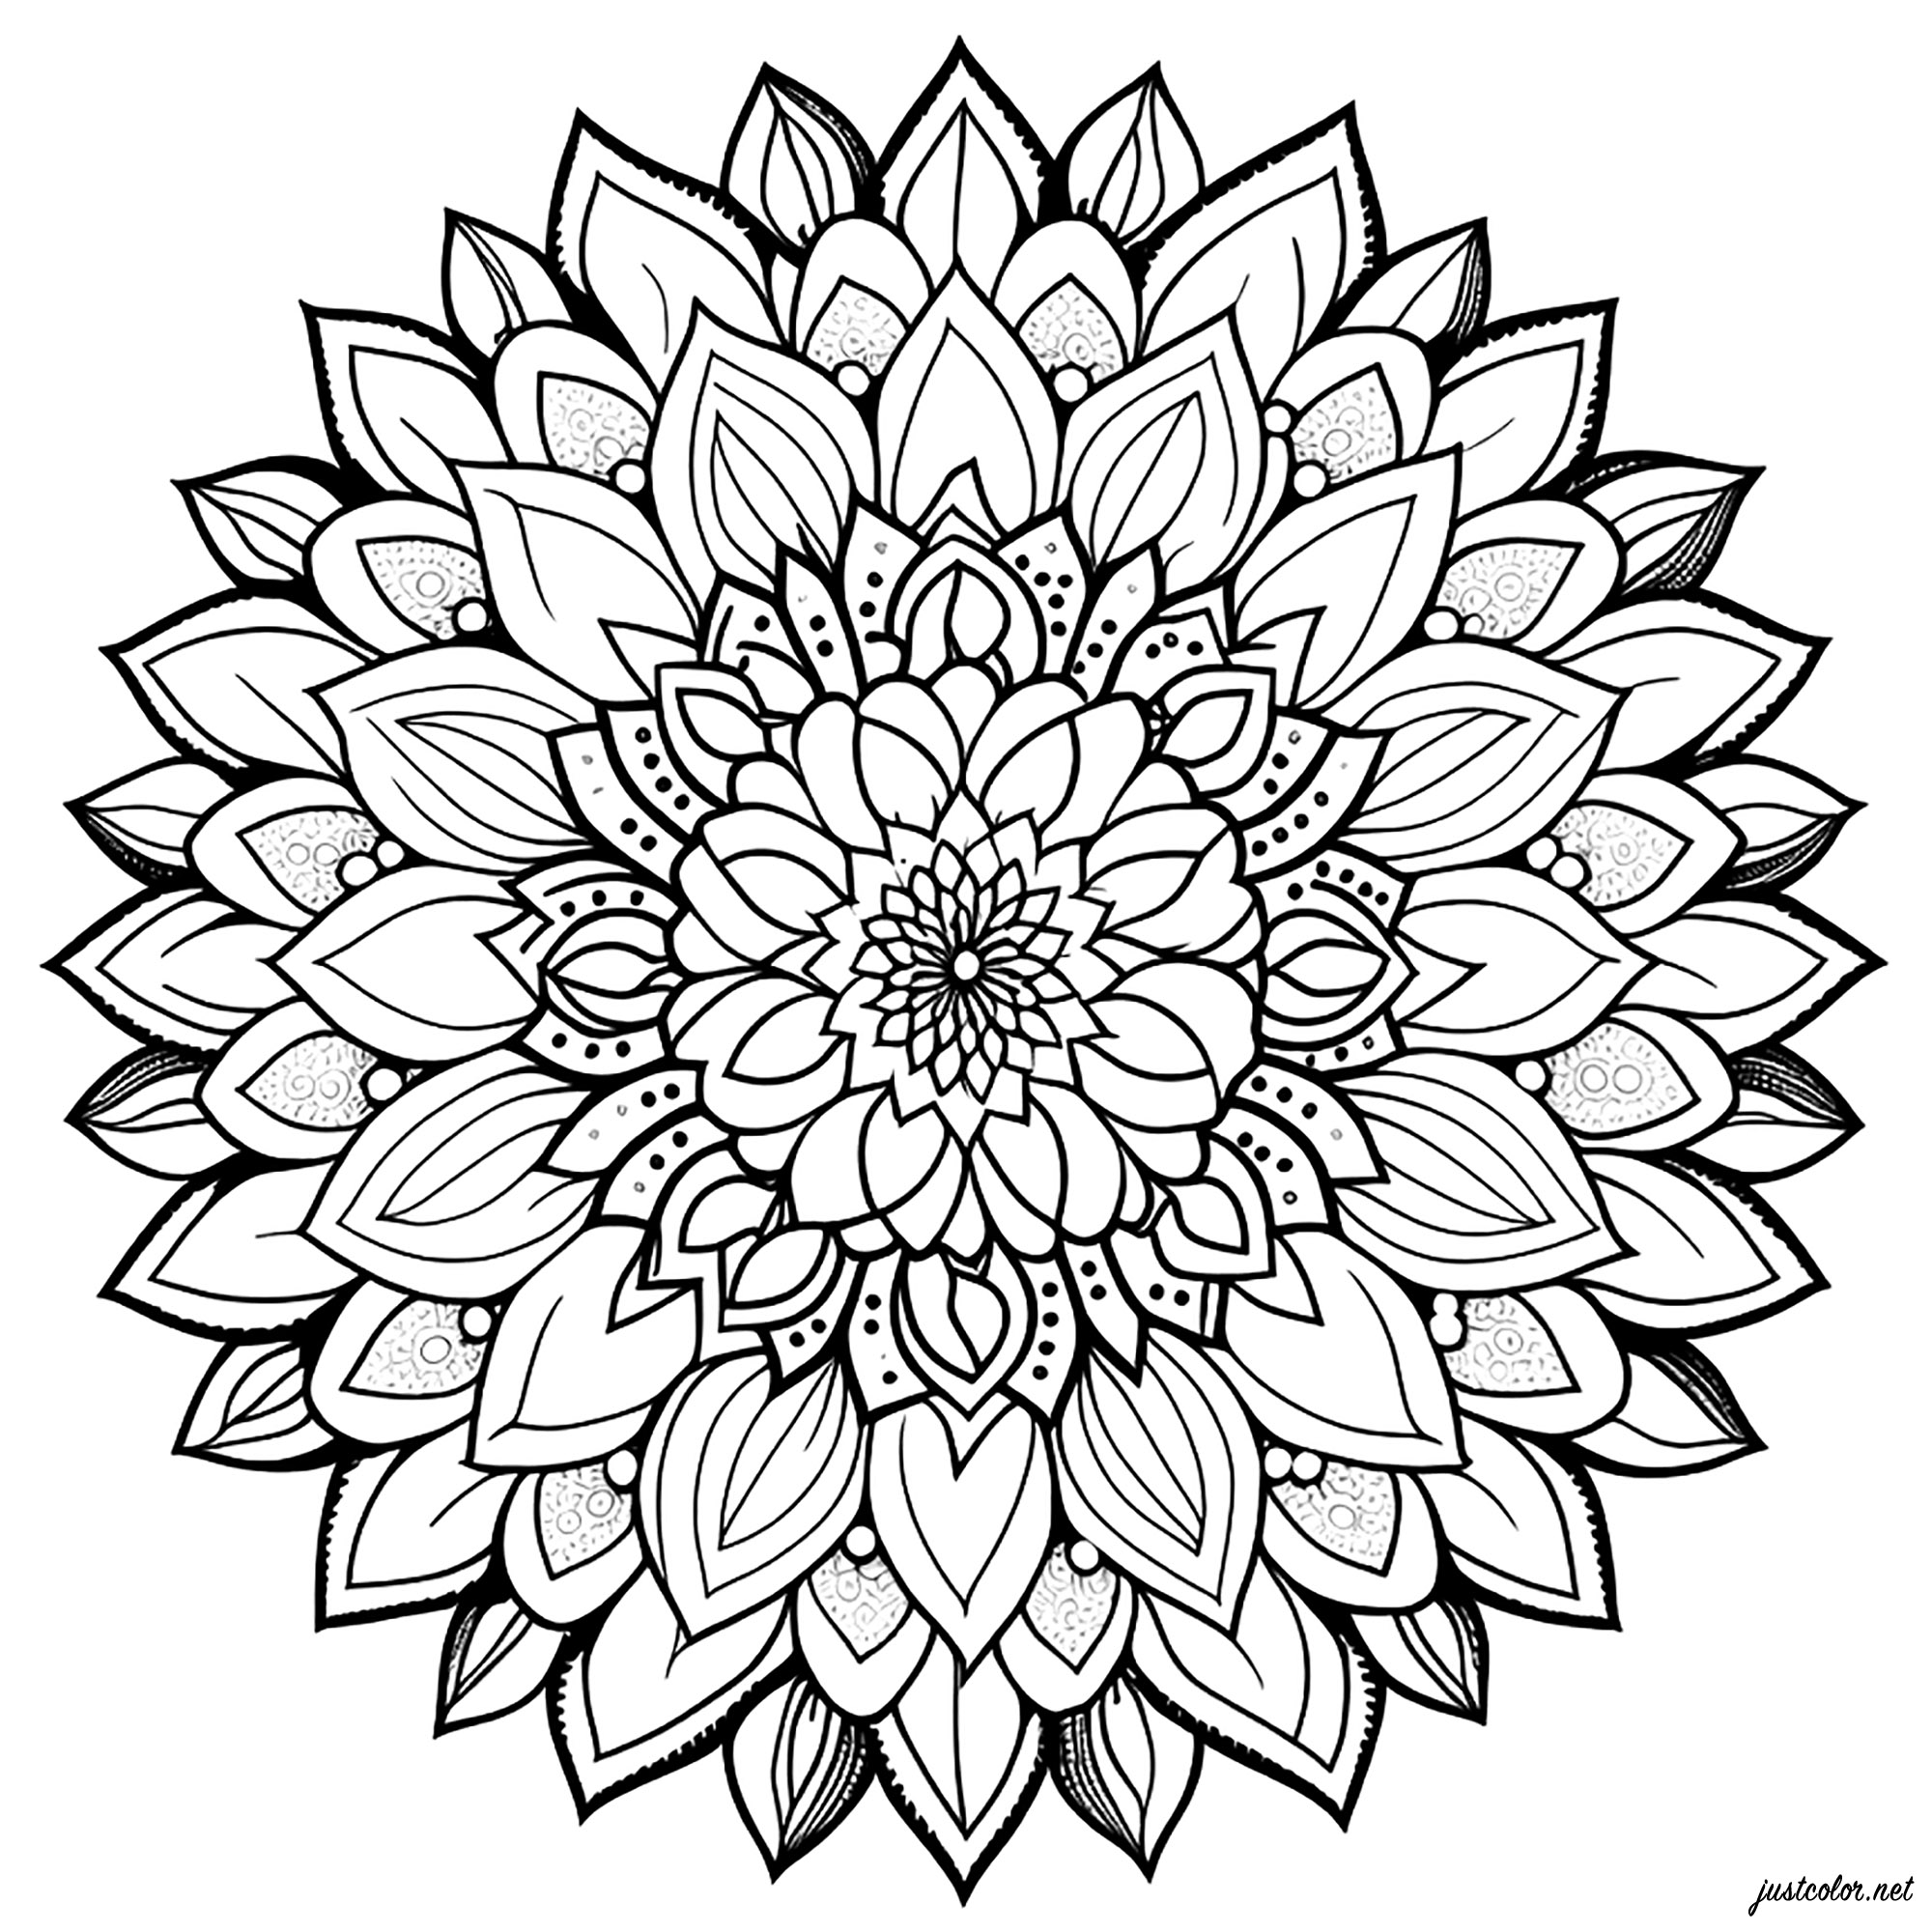 Mandala semplice con petali. Questo semplice mandala di petali da colorare è molto carino e facile da realizzare. È composto da fiori e petali di fiori che si incastrano perfettamente l'uno nell'altro.